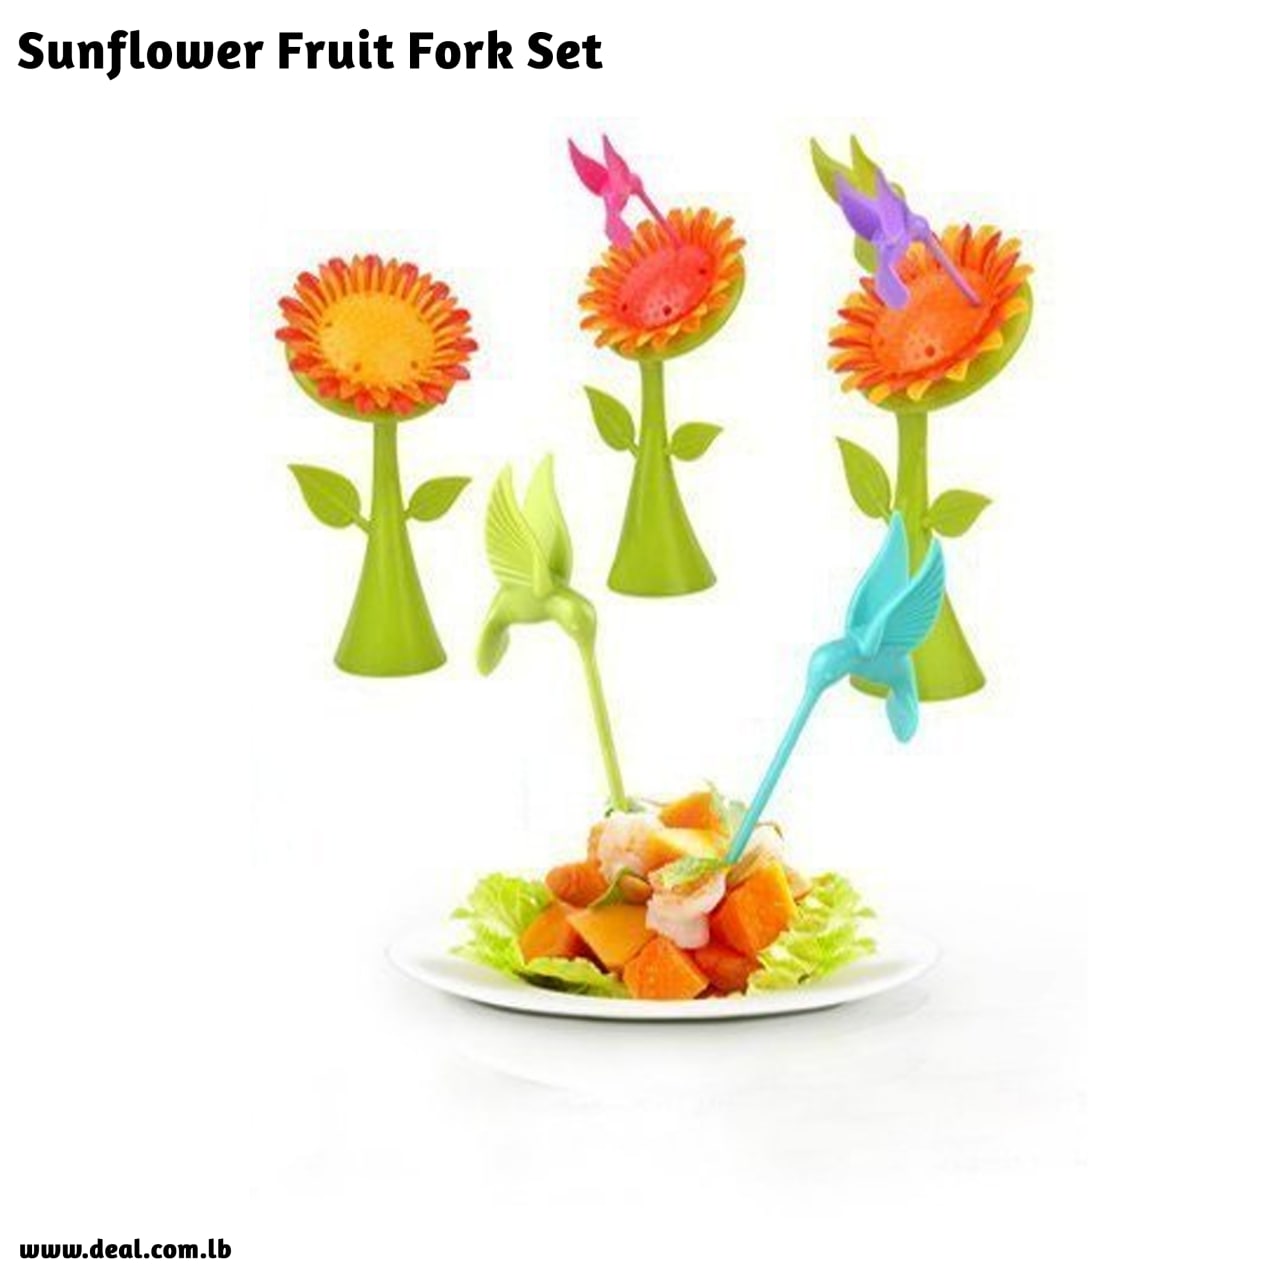 Sunflower Fruit Fork Set